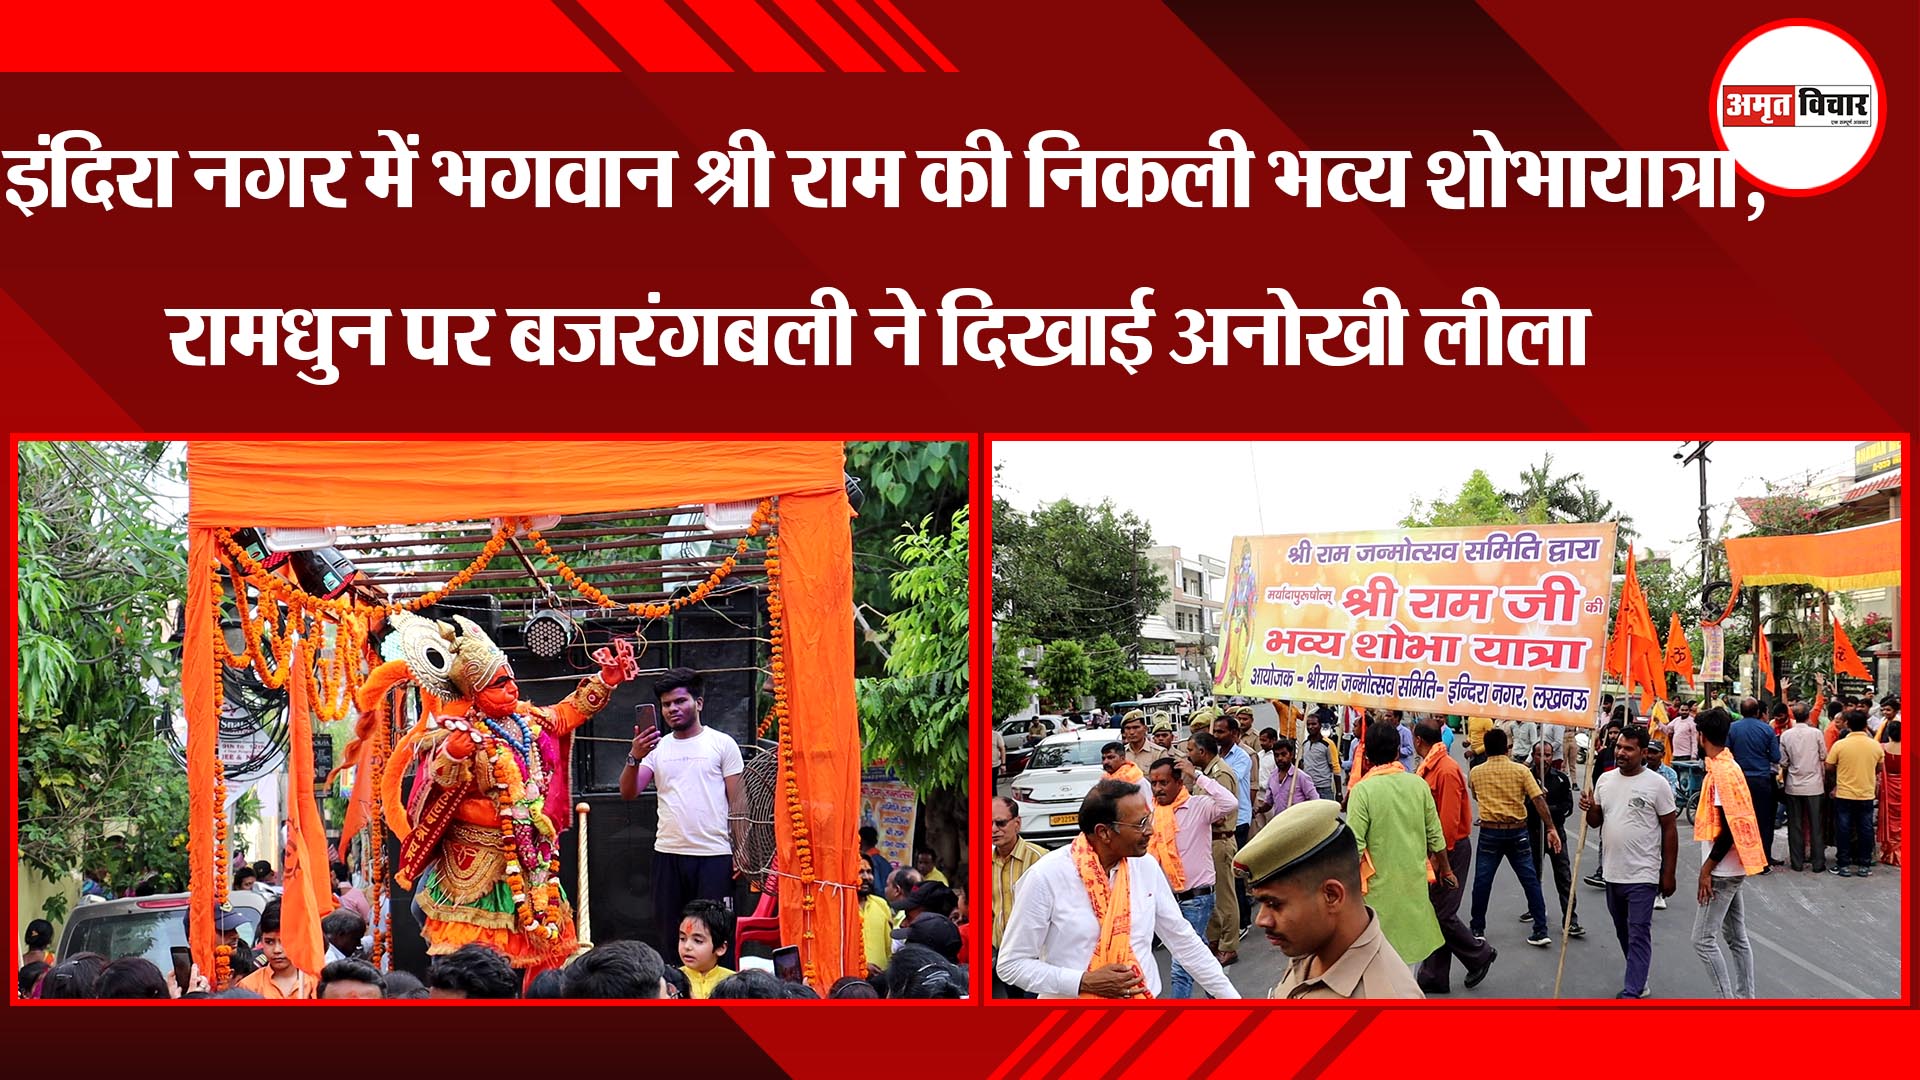 लखनऊ: इंदिरा नगर में भगवान श्री राम की निकली भव्य शोभायात्रा, रामधुन पर बजरंगबली ने दिखाई अनोखी लीला